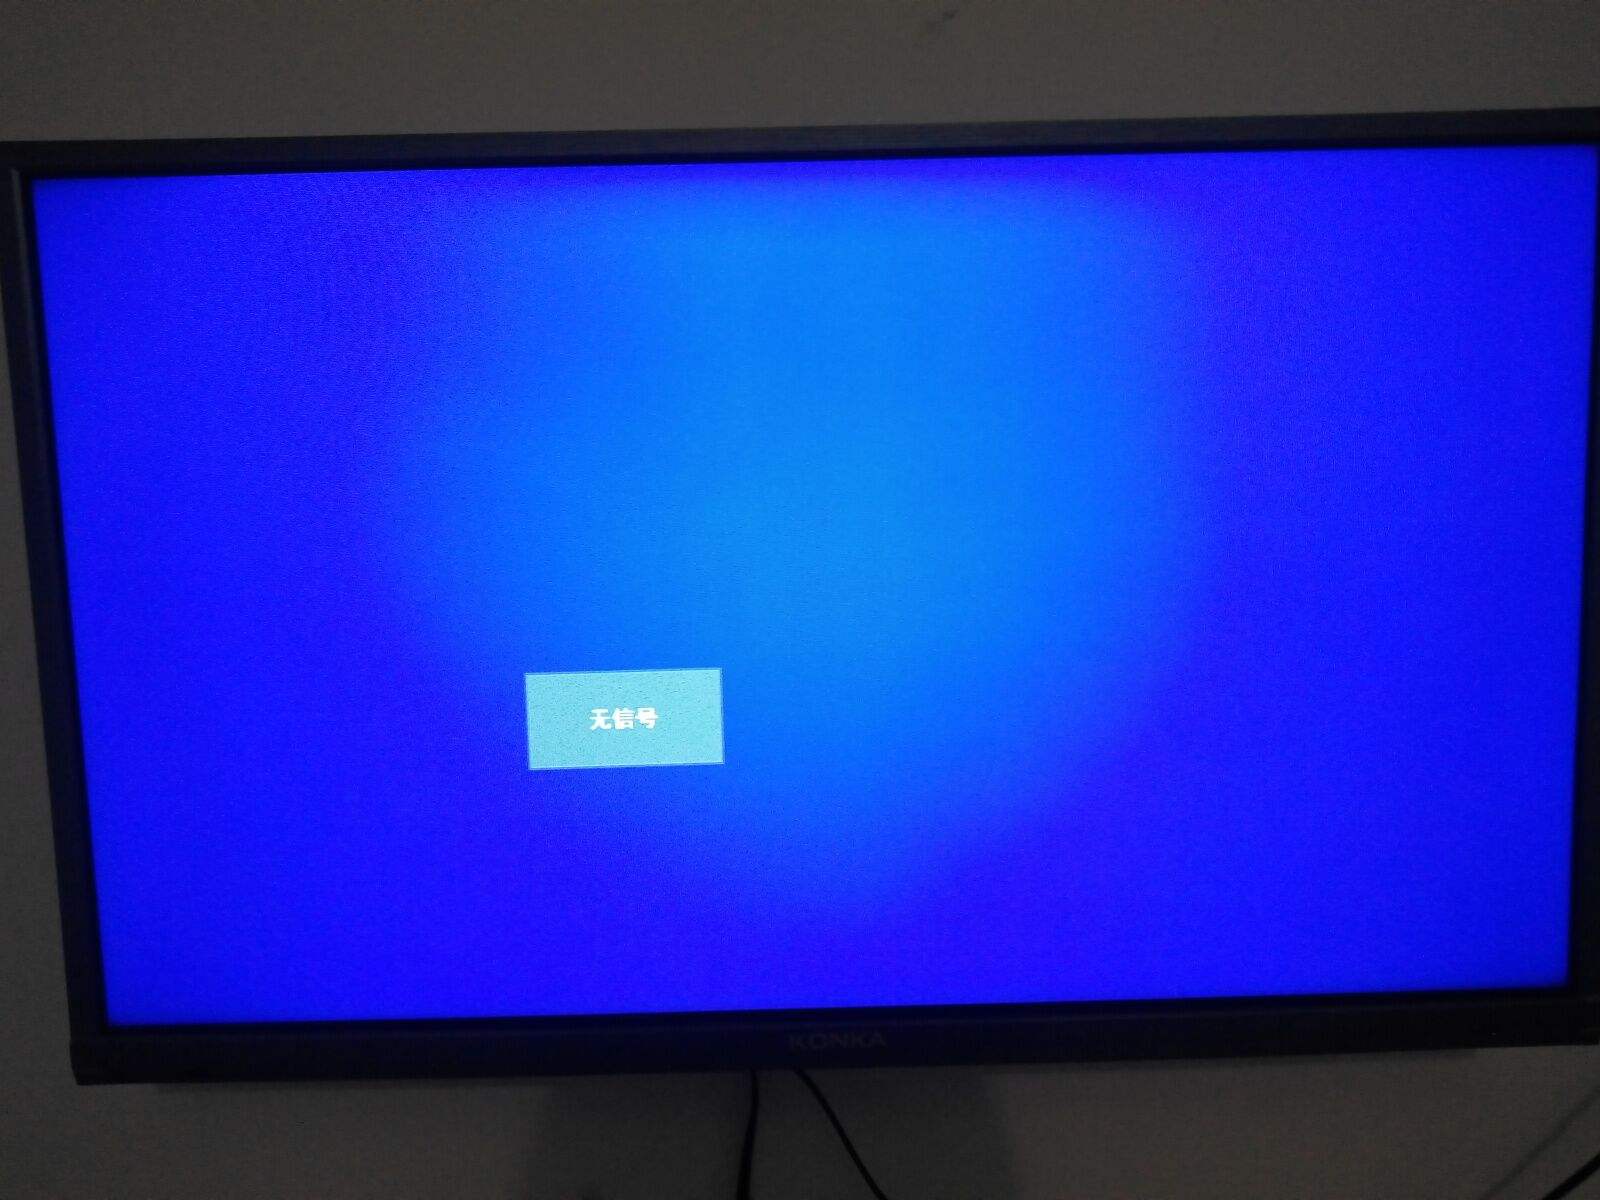 電視藍屏沒圖像怎么辦？簡單的解決辦法教給你！